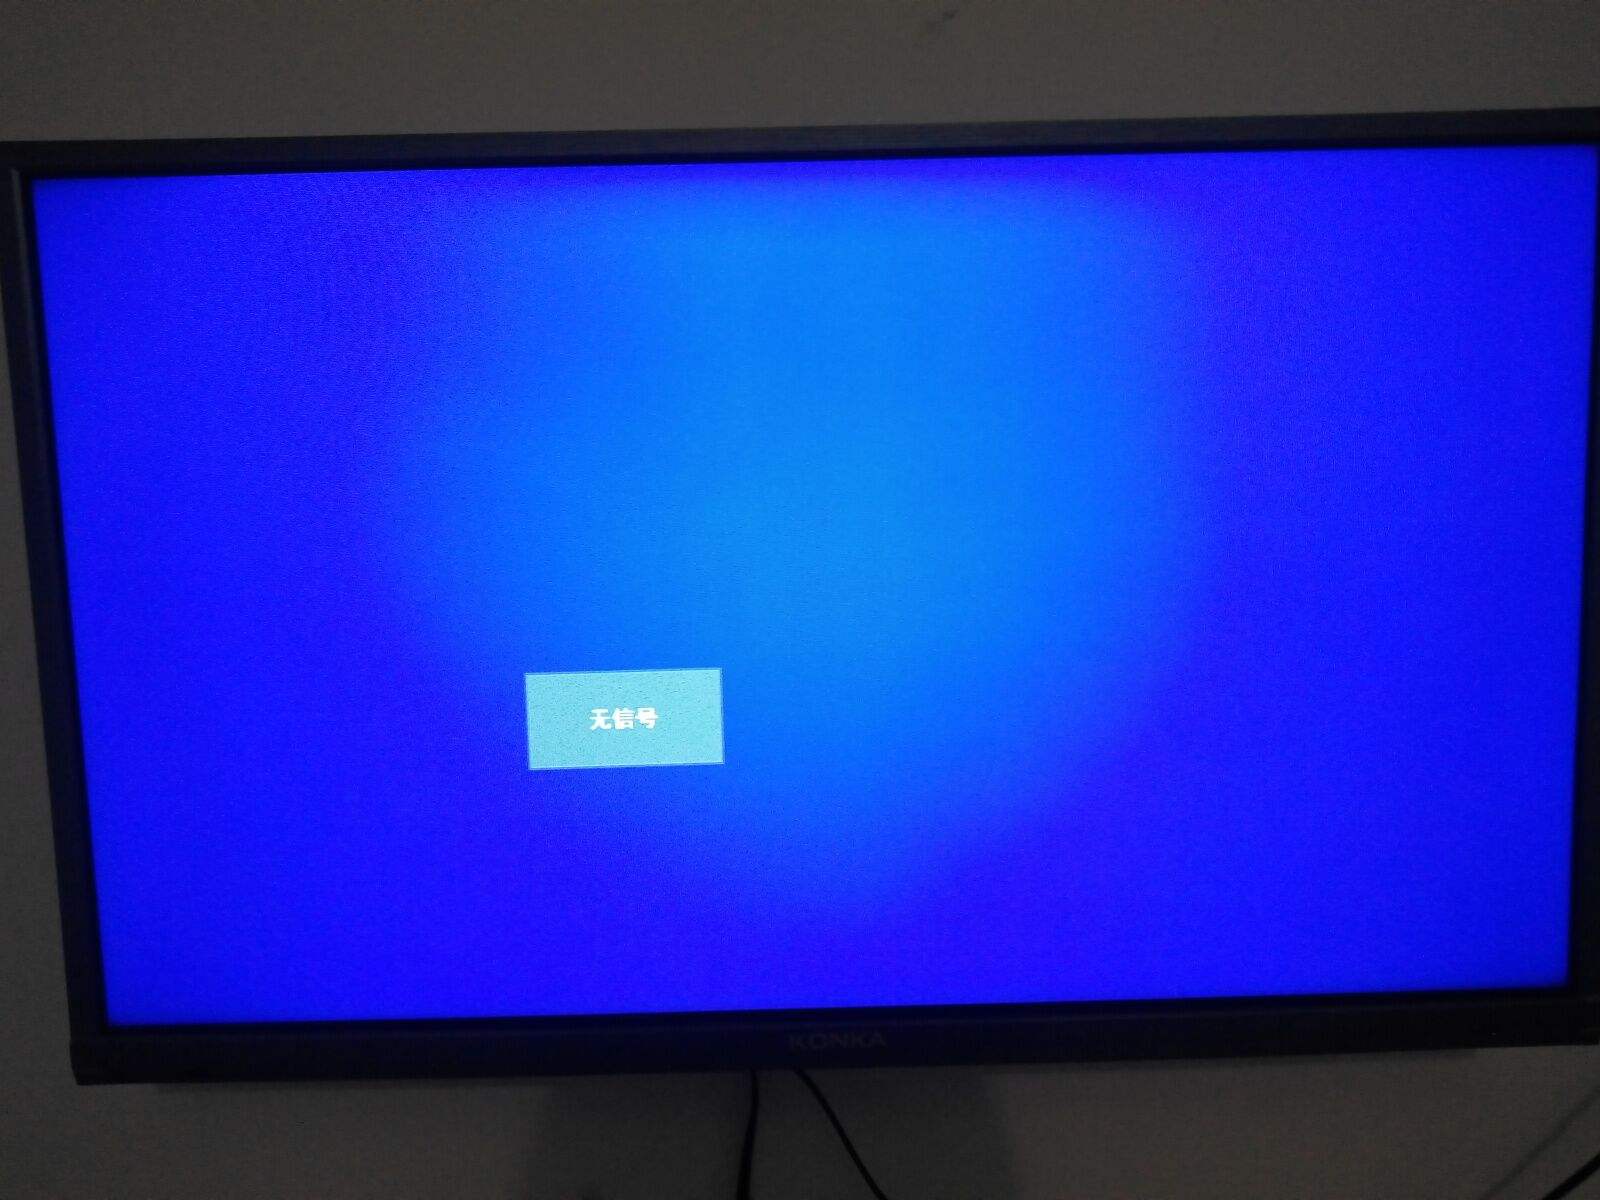 電視藍屏沒圖像怎么辦？簡單的解決辦法教給你！